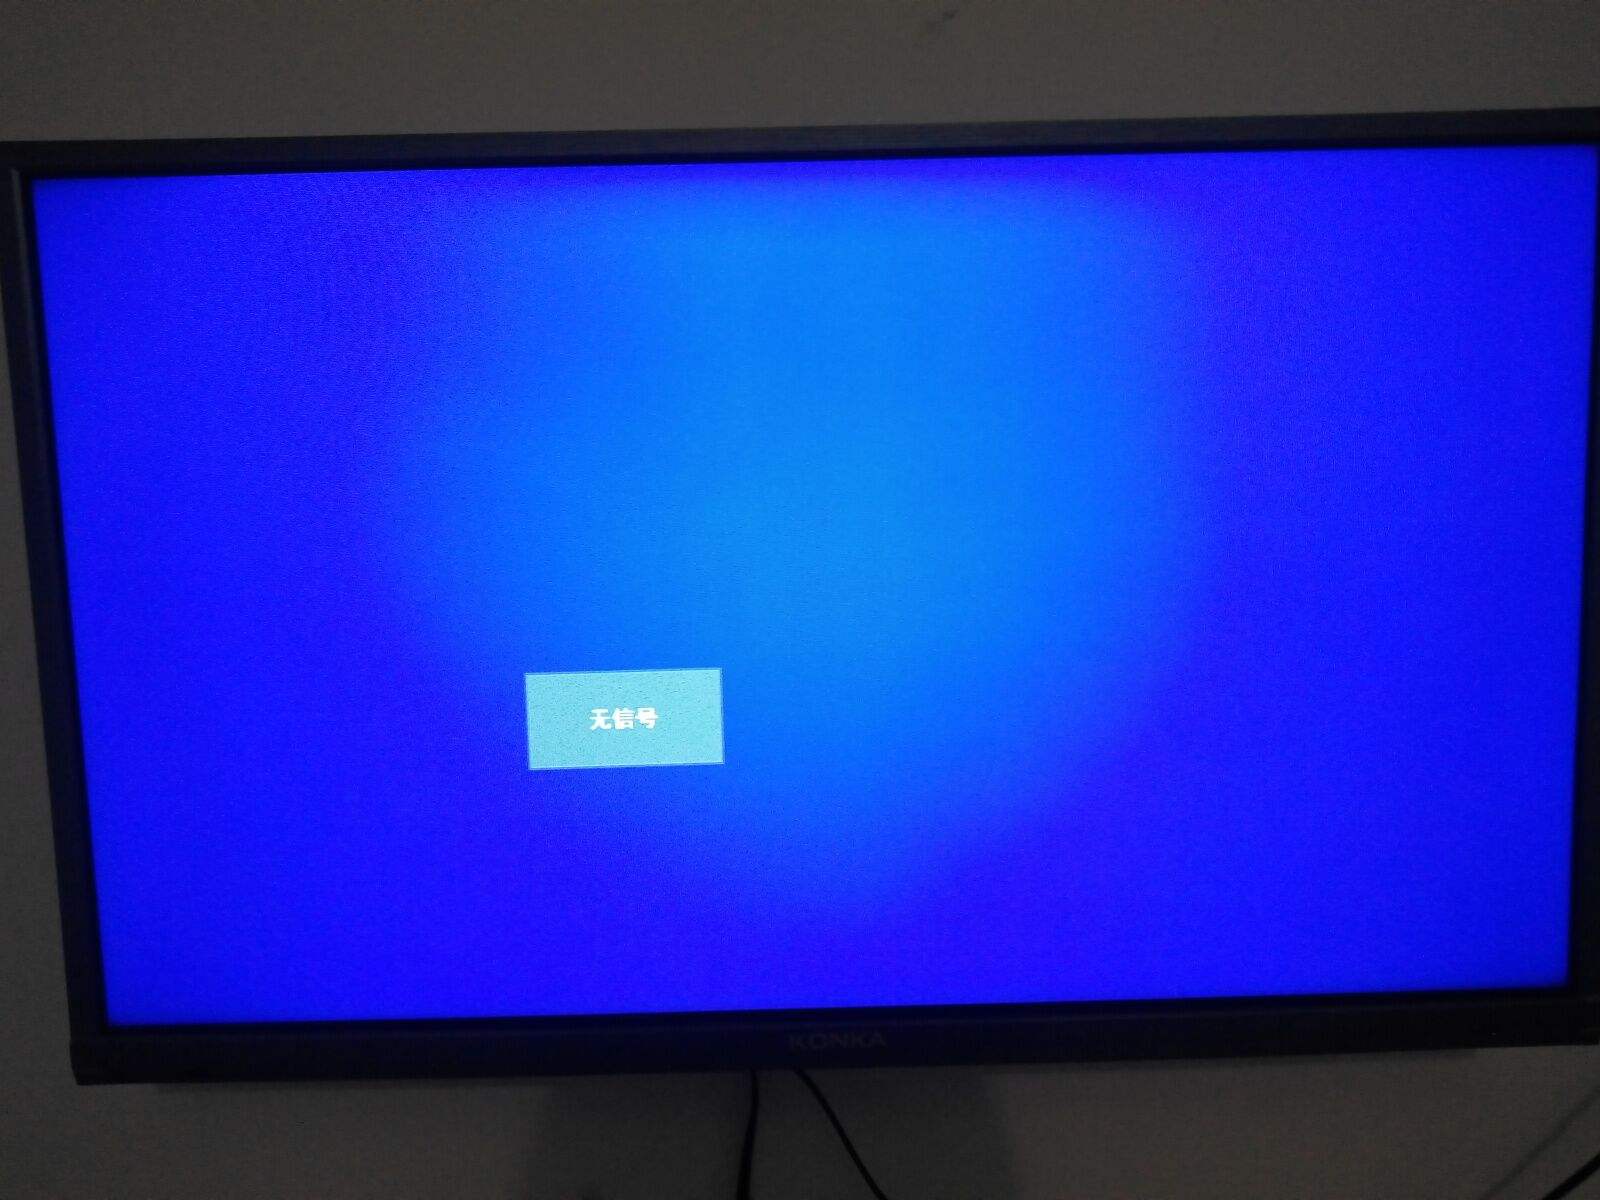 電視藍屏沒圖像怎么辦？簡單的解決辦法教給你！